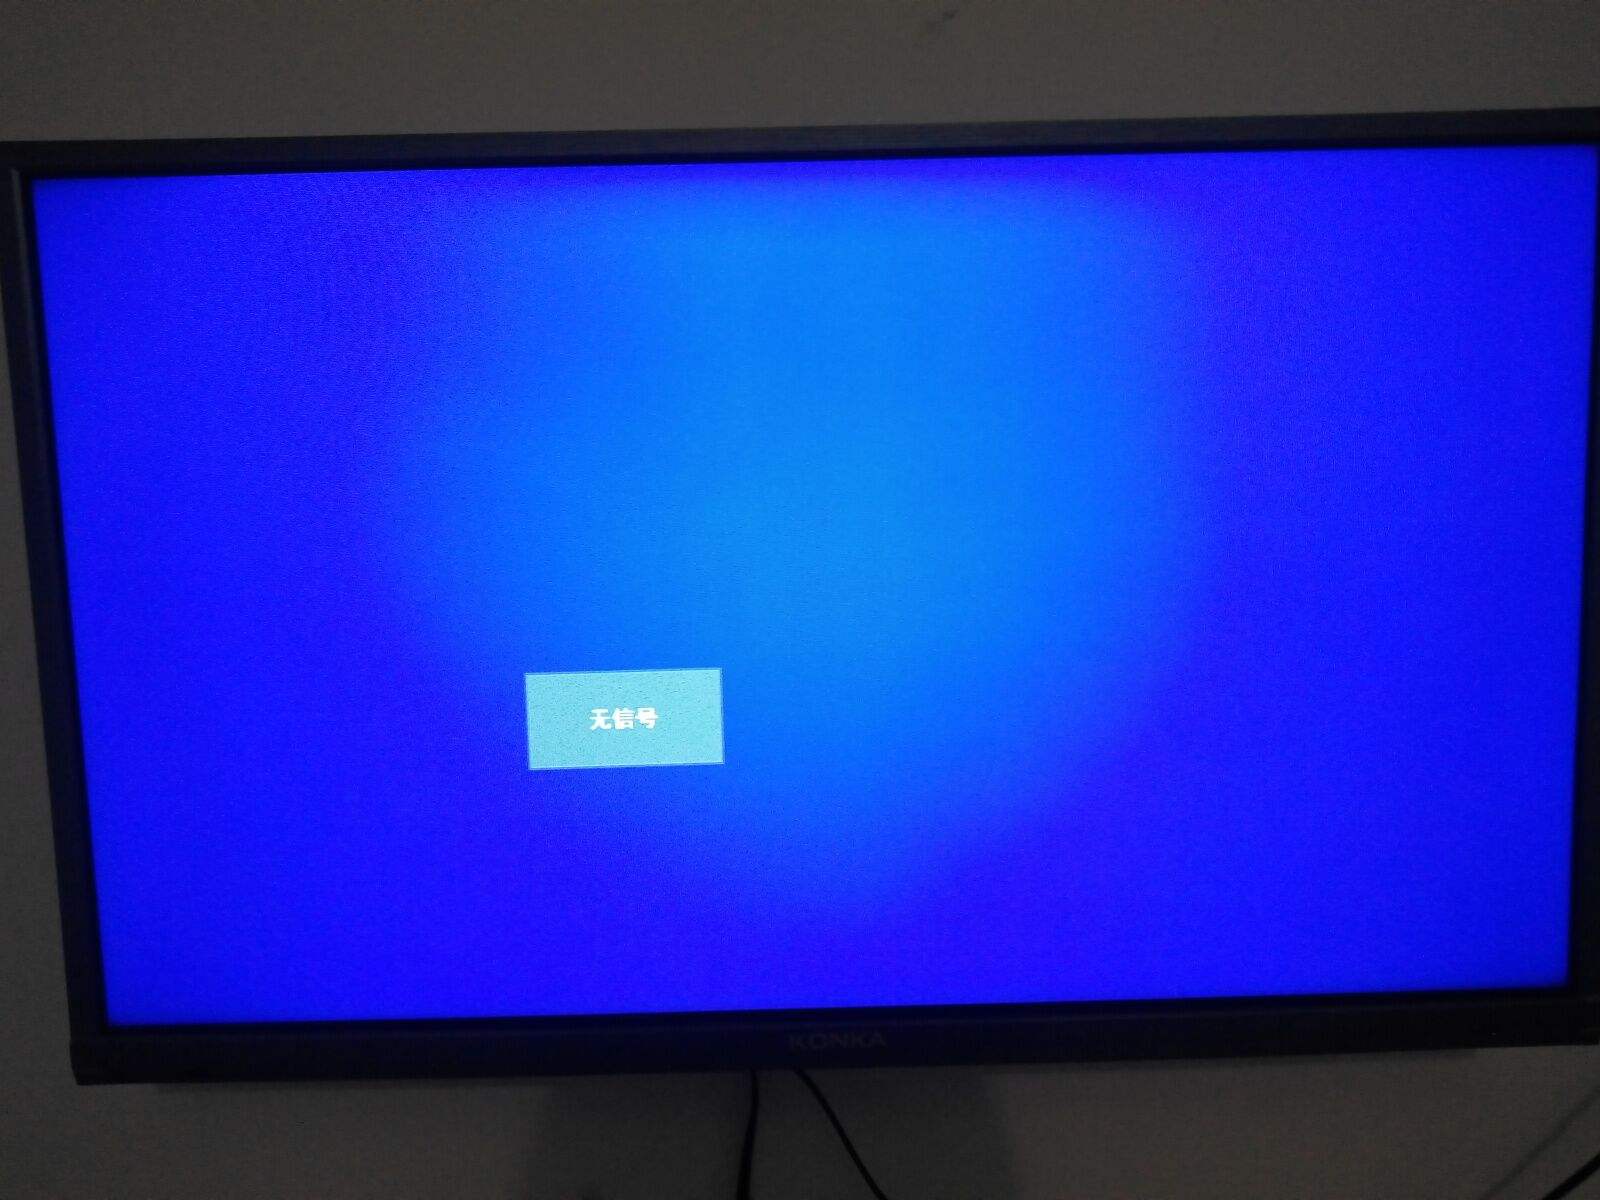 電視藍屏沒圖像怎么辦？簡單的解決辦法教給你！